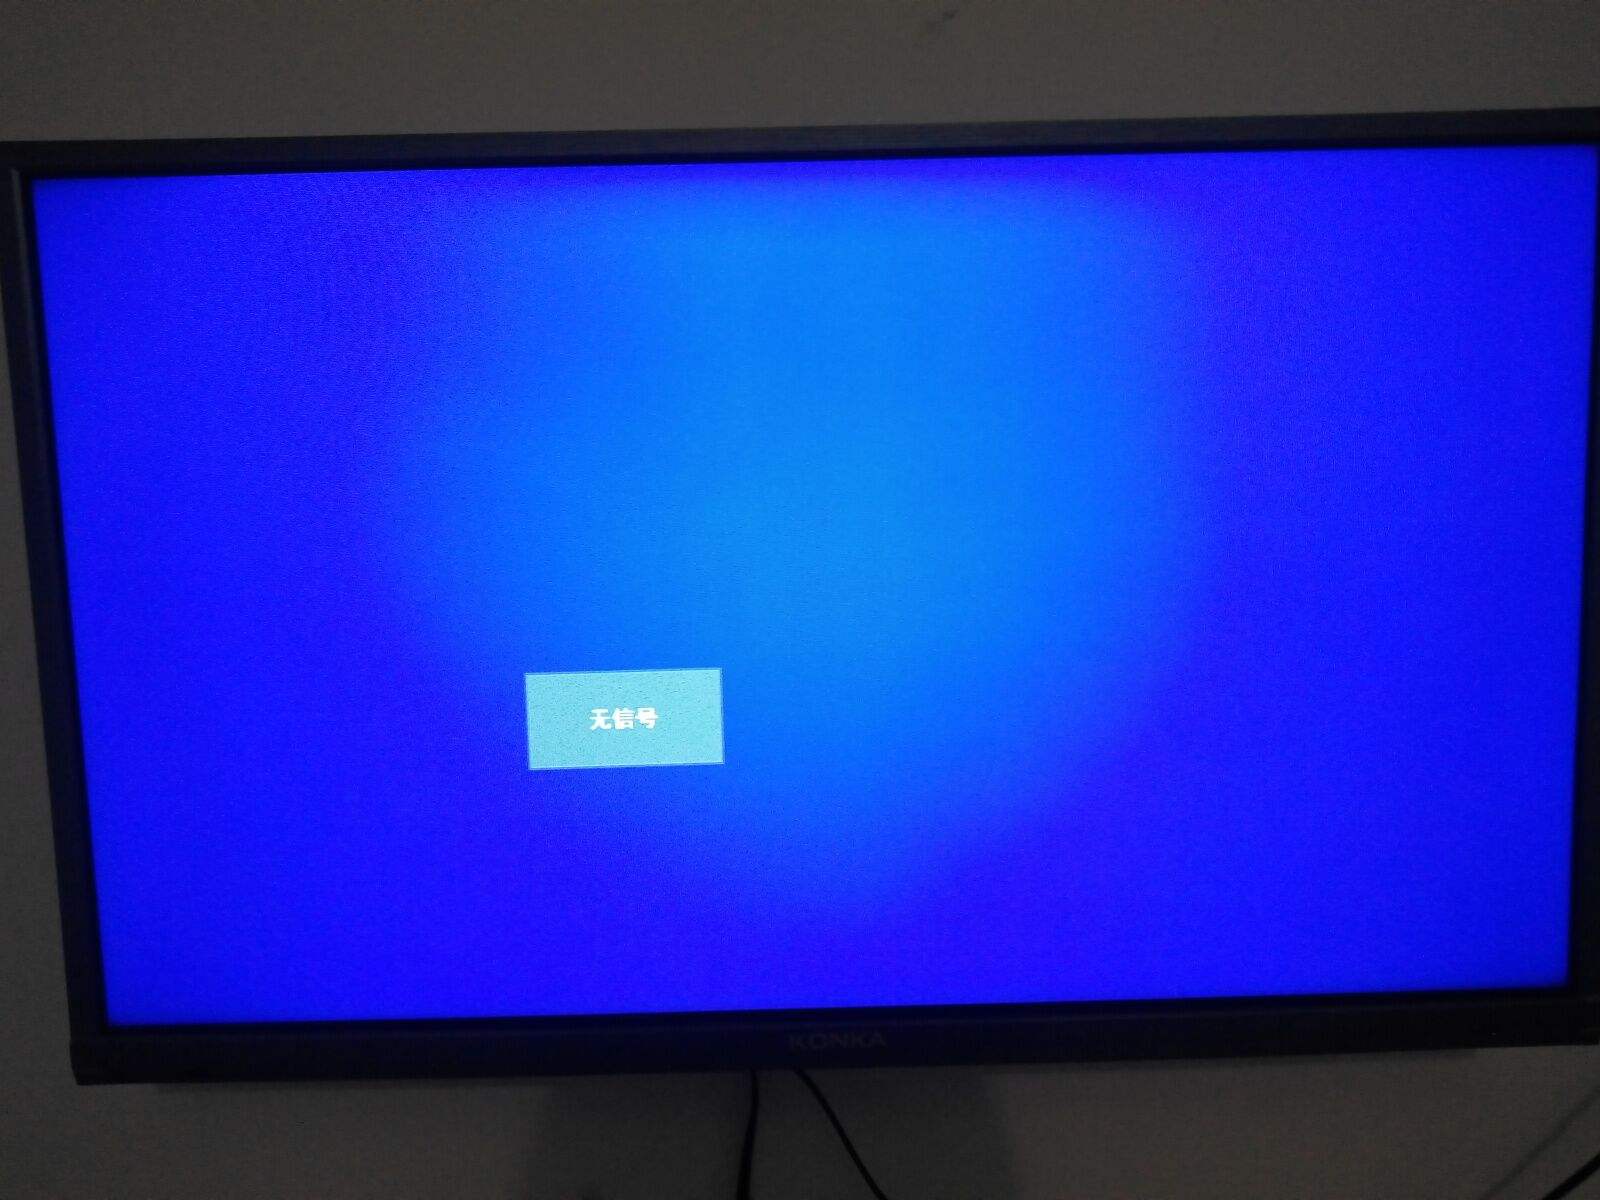 電視藍屏沒圖像怎么辦？簡單的解決辦法教給你！